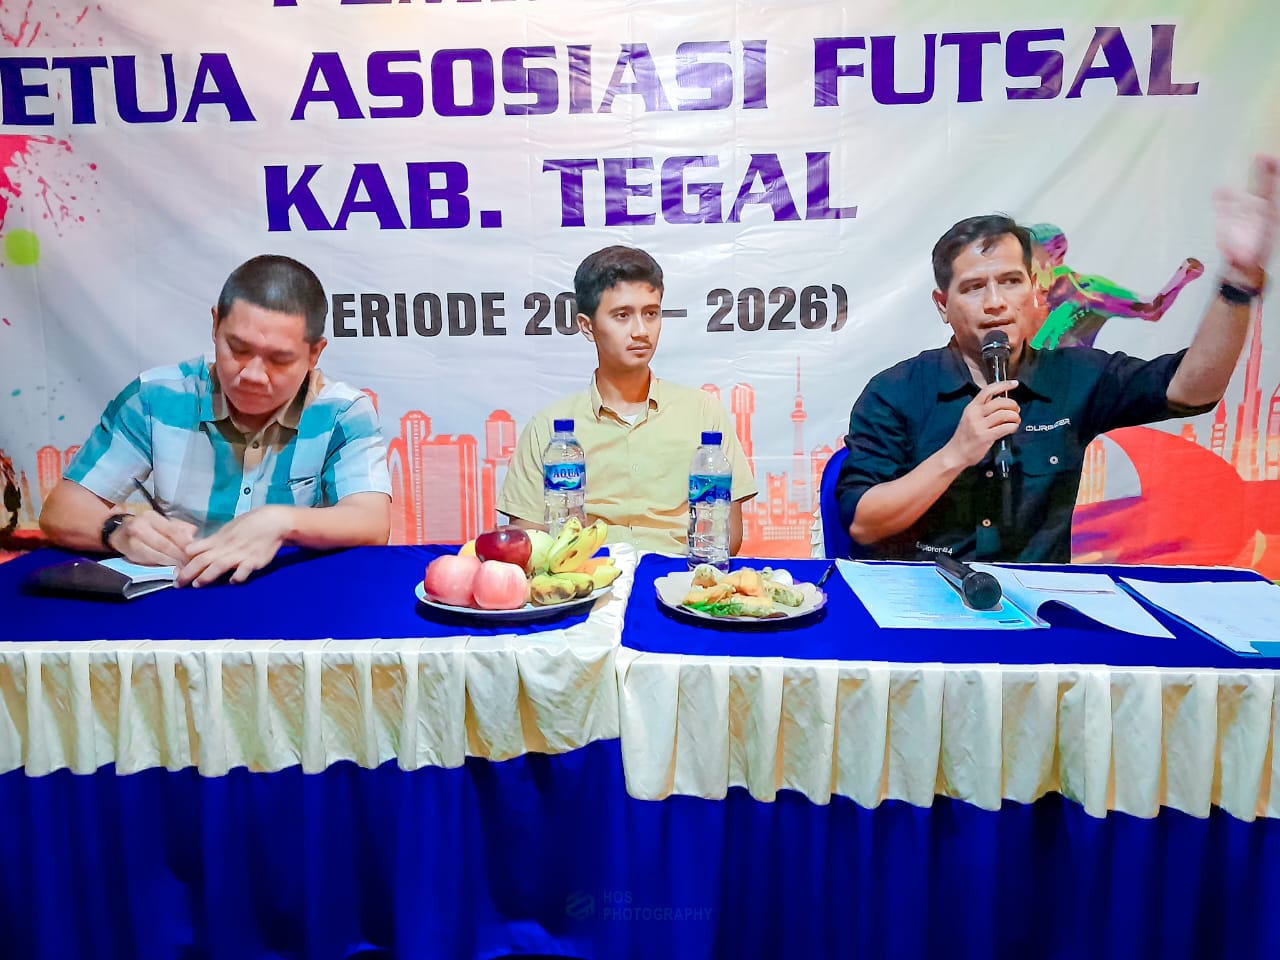 Sah! Ade Krisna Terpilih Aklamasi sebagai Ketua Asosiasi Futsal Kabupaten Tegal